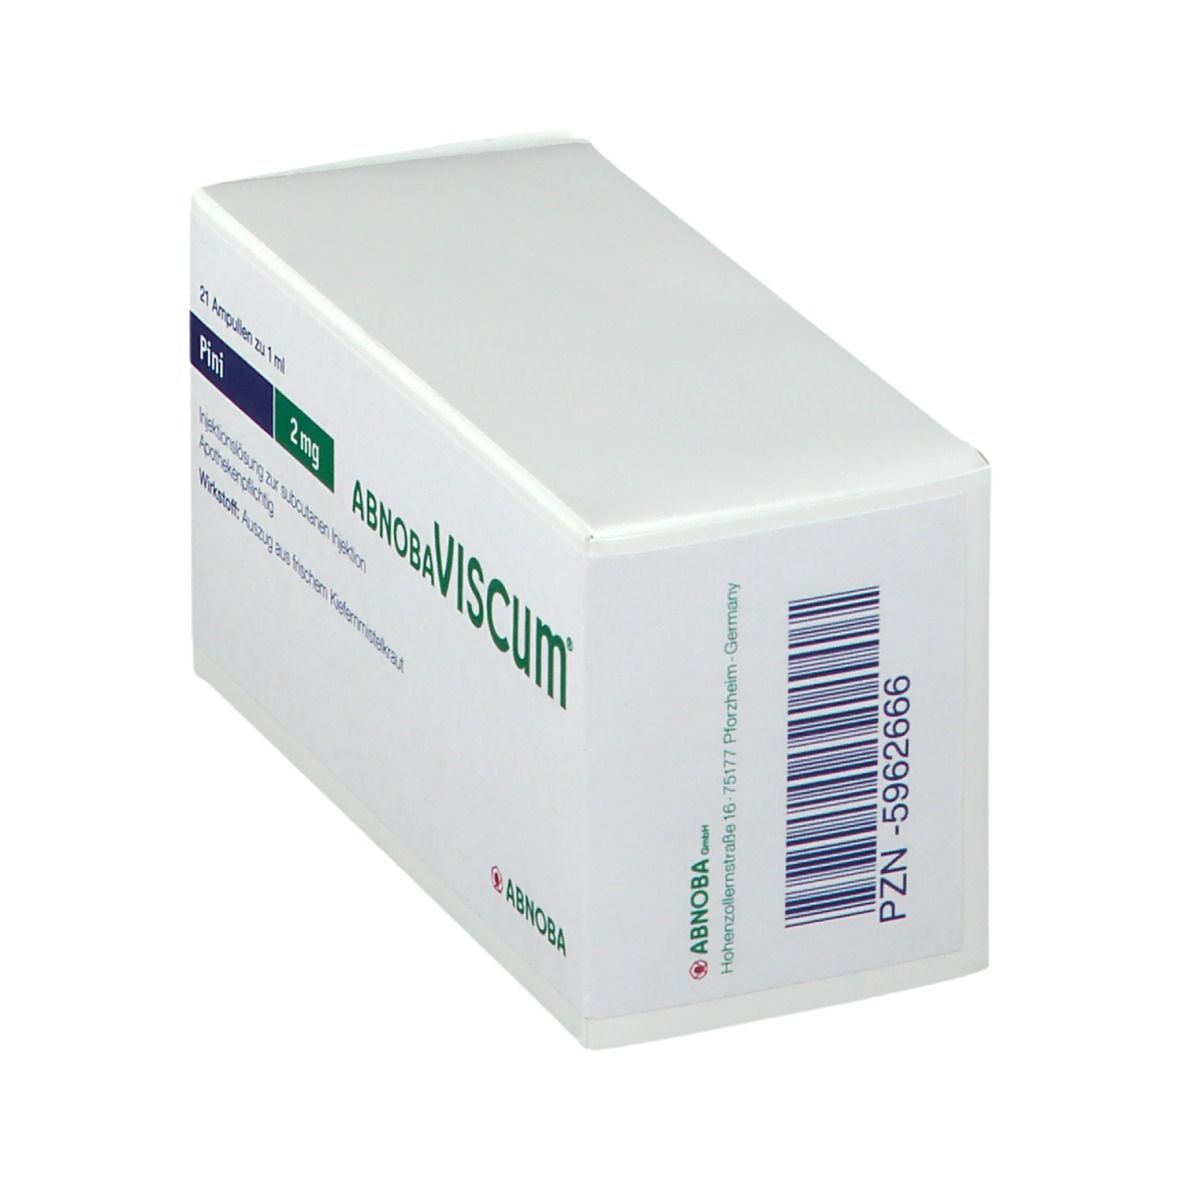 abnobaVISCUM® Pini 2 mg Ampullen